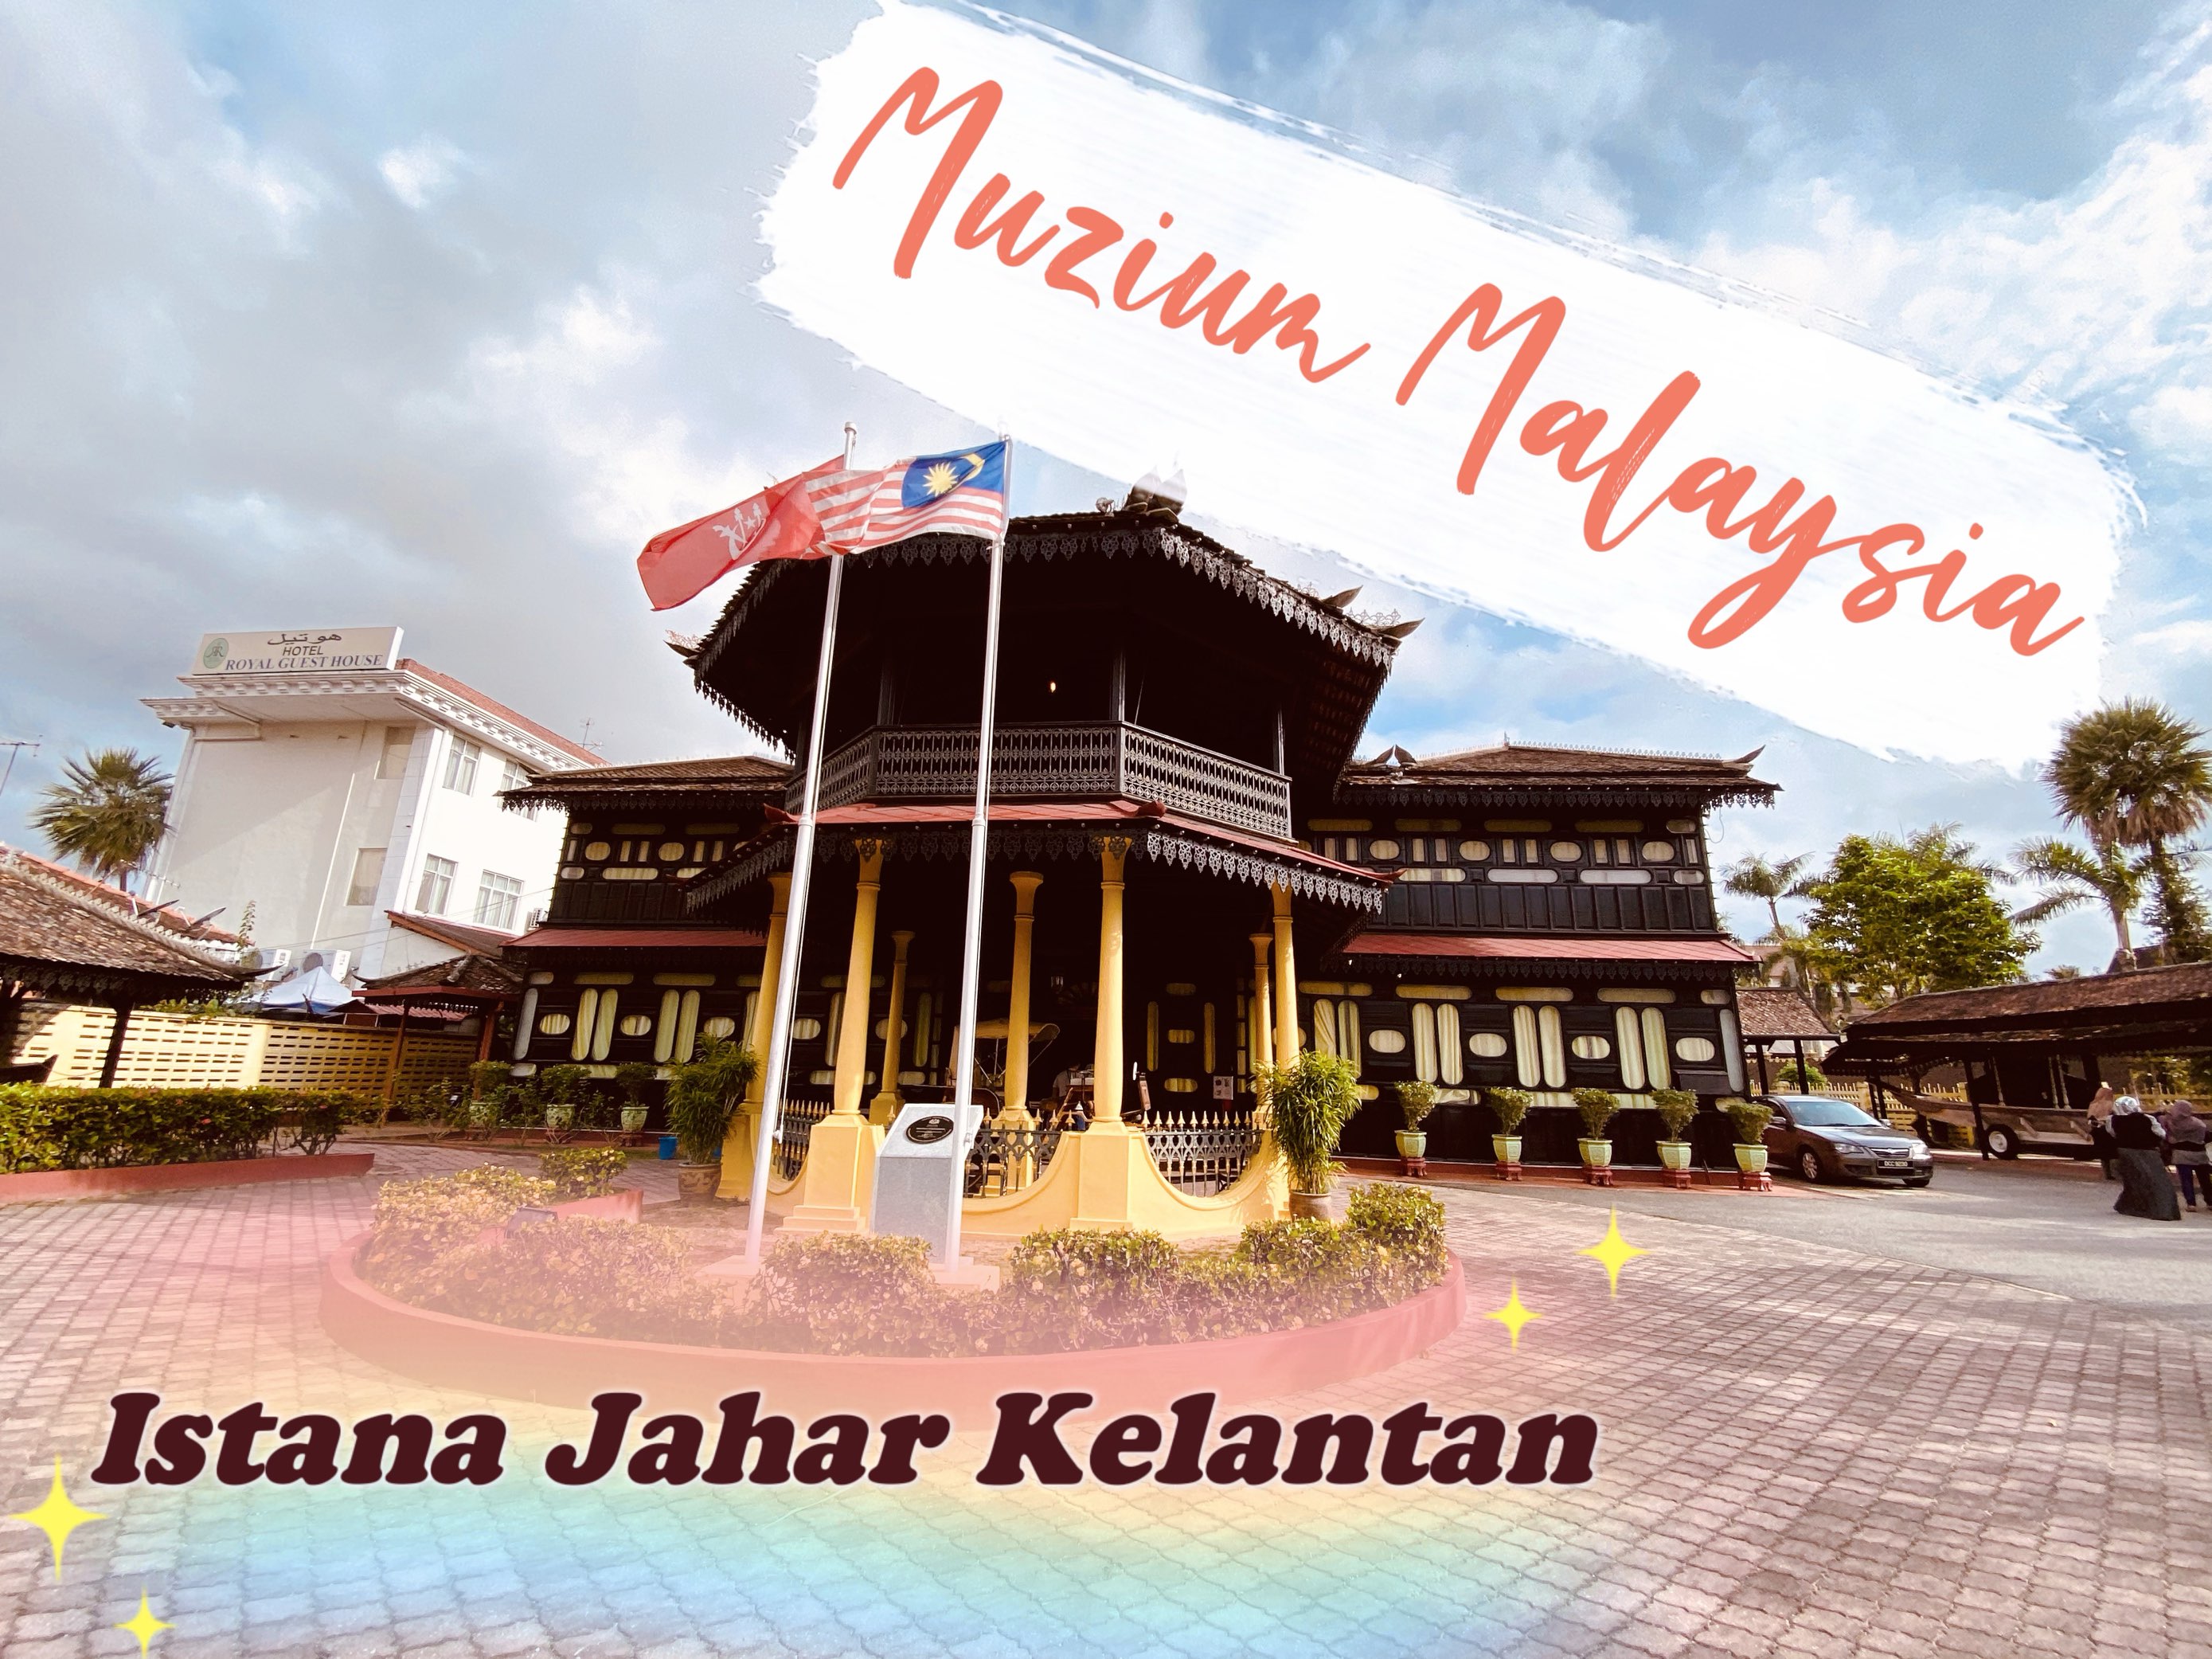 马来西亚吉兰丹贾哈博物馆。